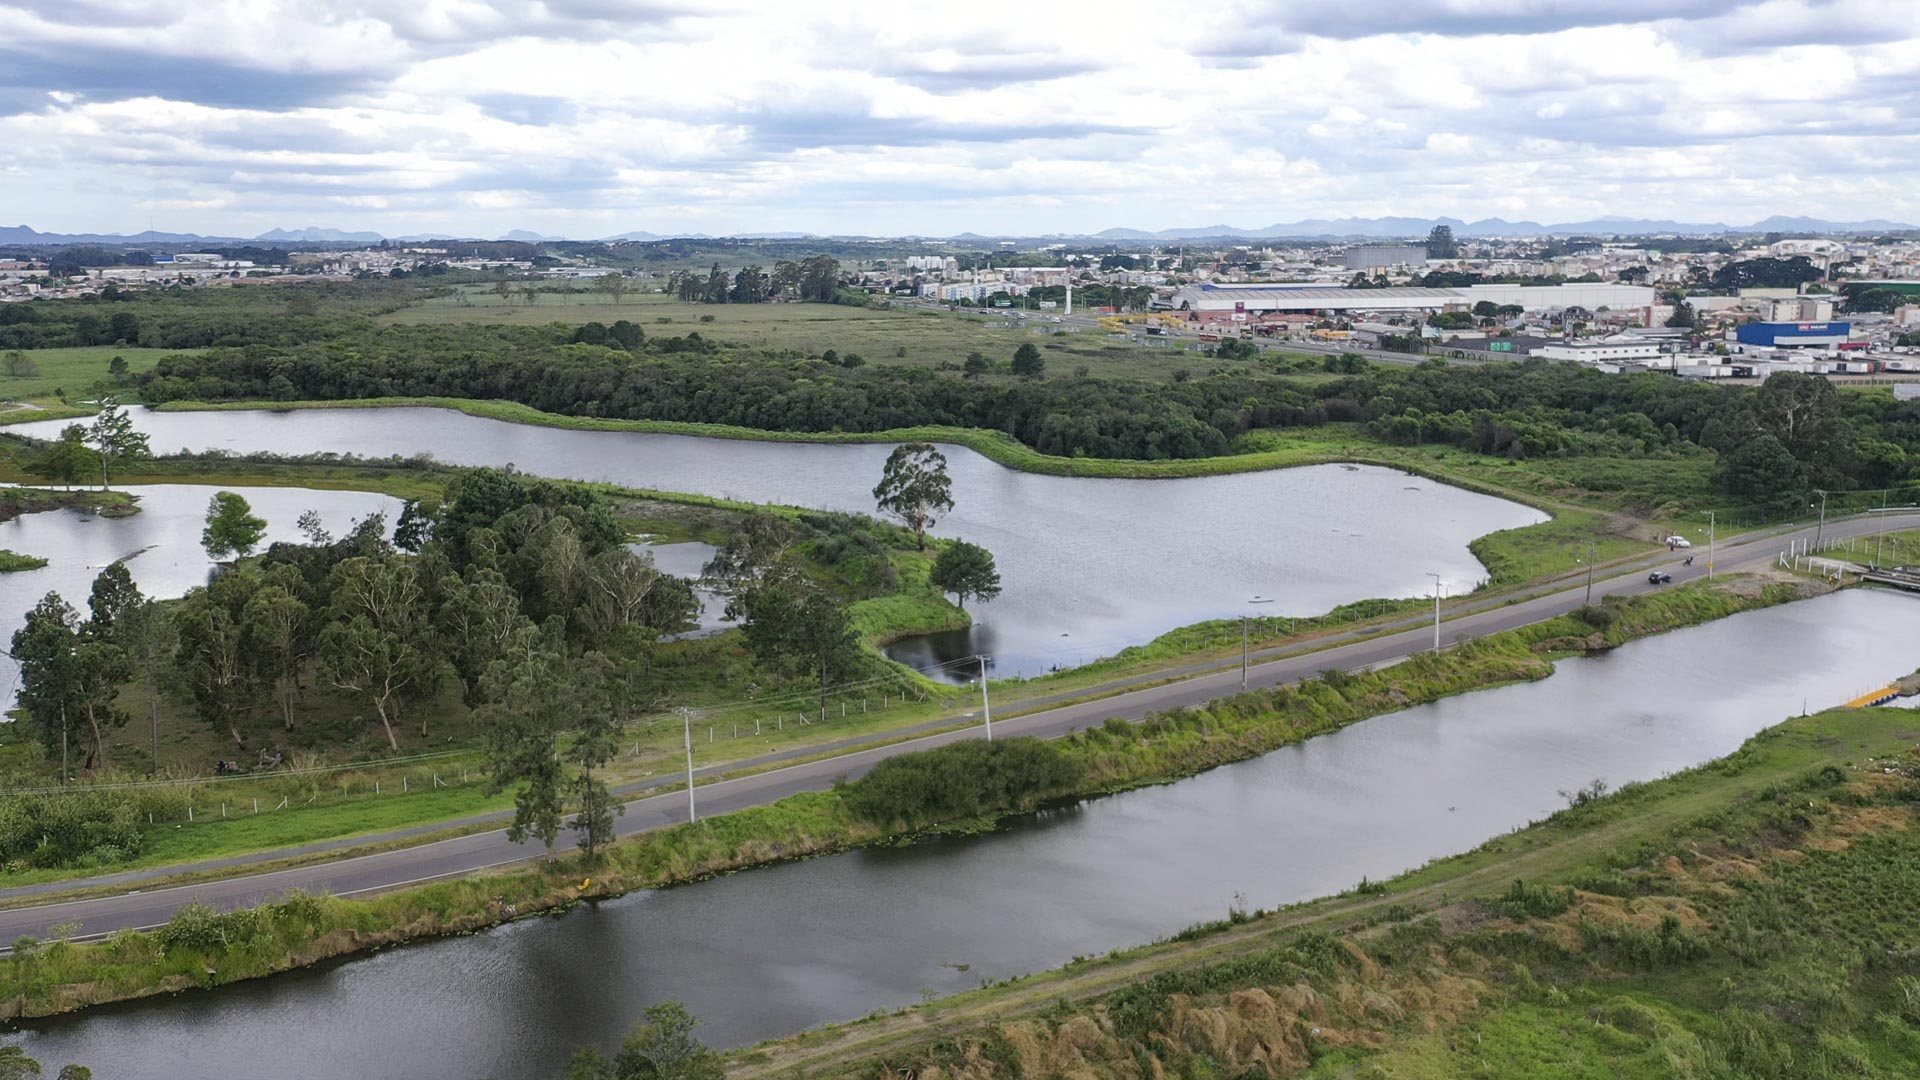  Curitiba reserva hídrica 